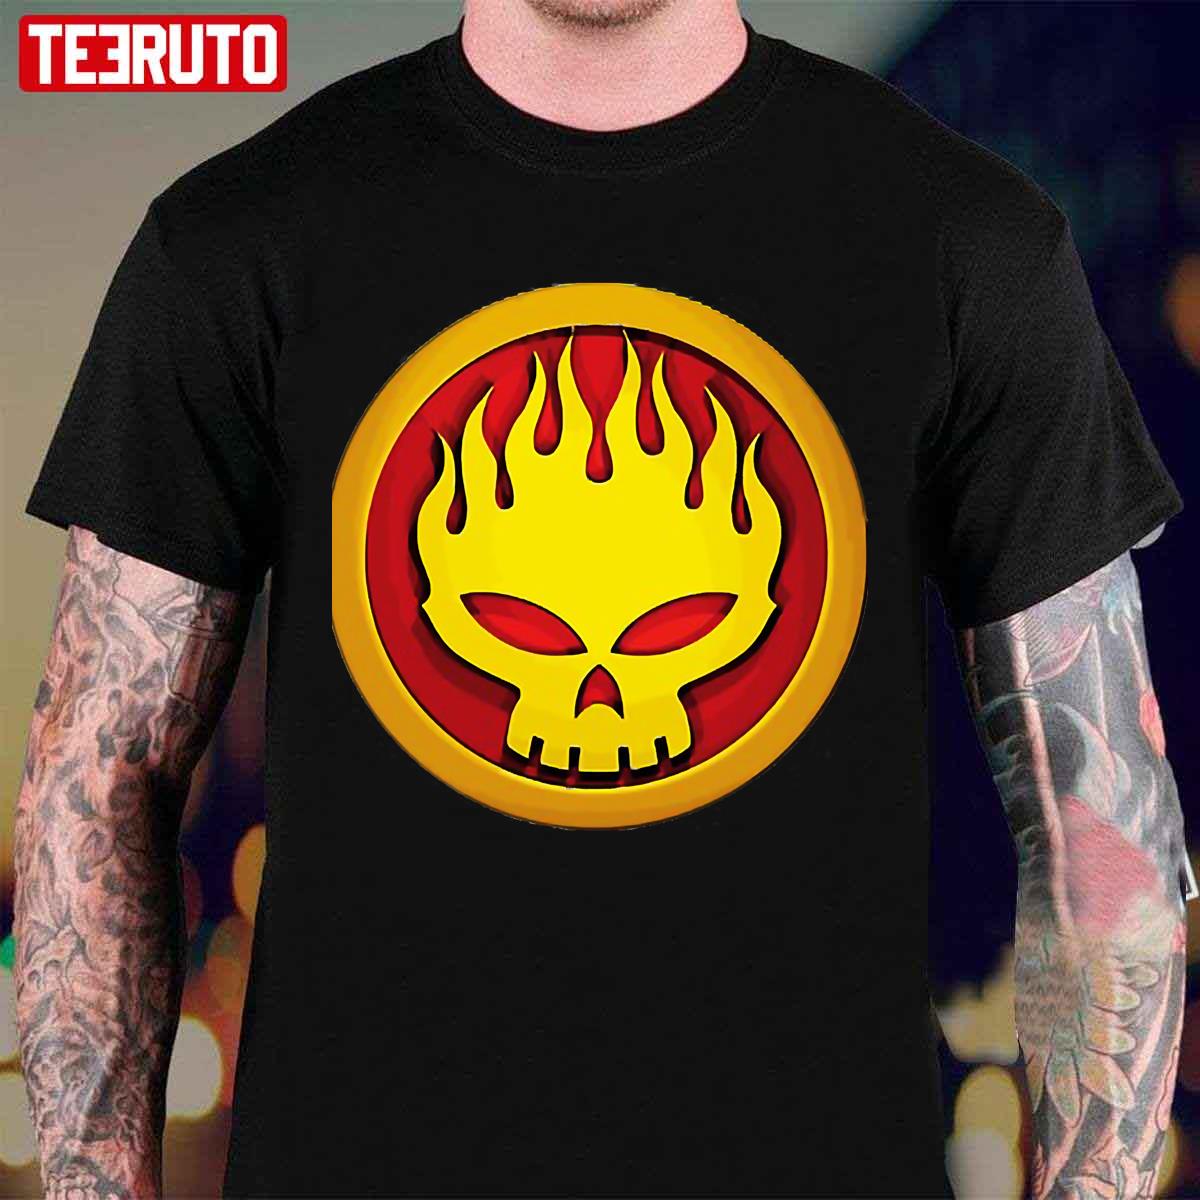 The Offspring Unisex T-Shirt